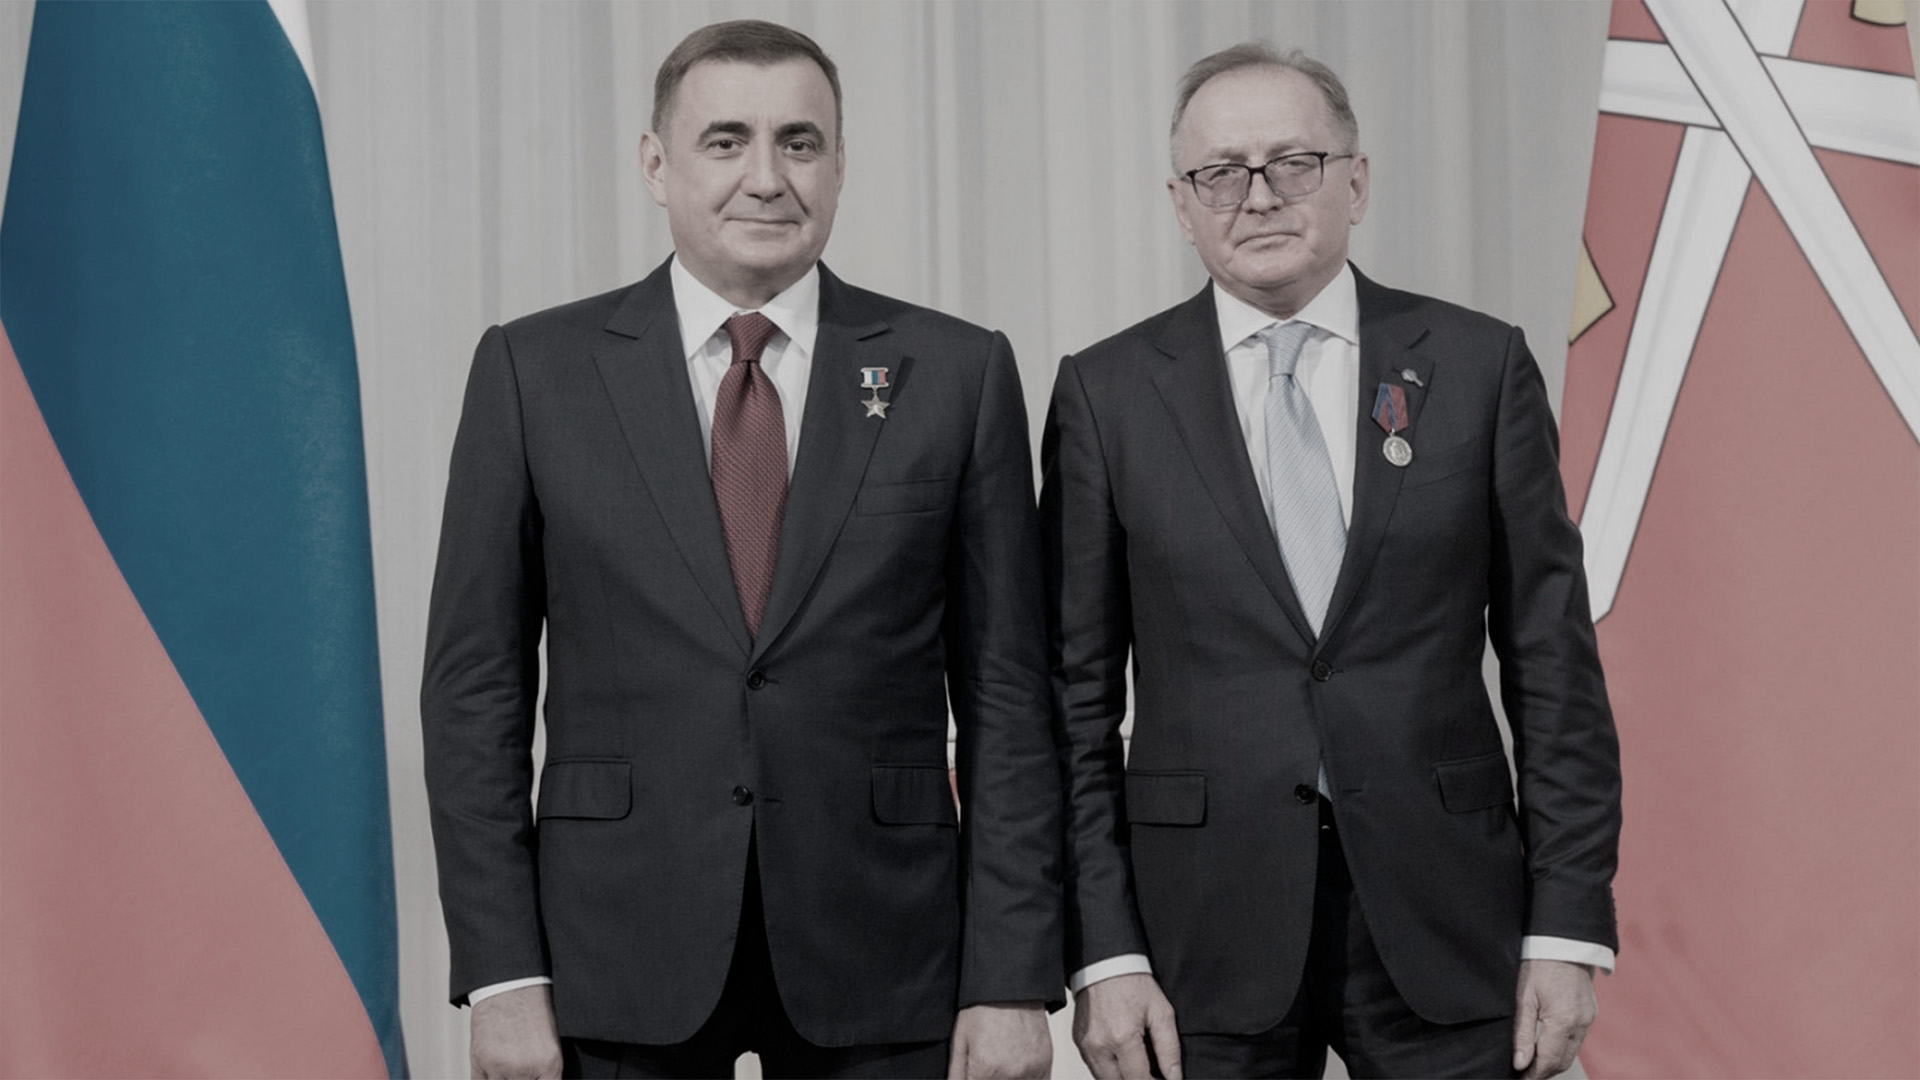 Филиппов В.Н. был награжден медалью За особый вклад в развитие Тульской области